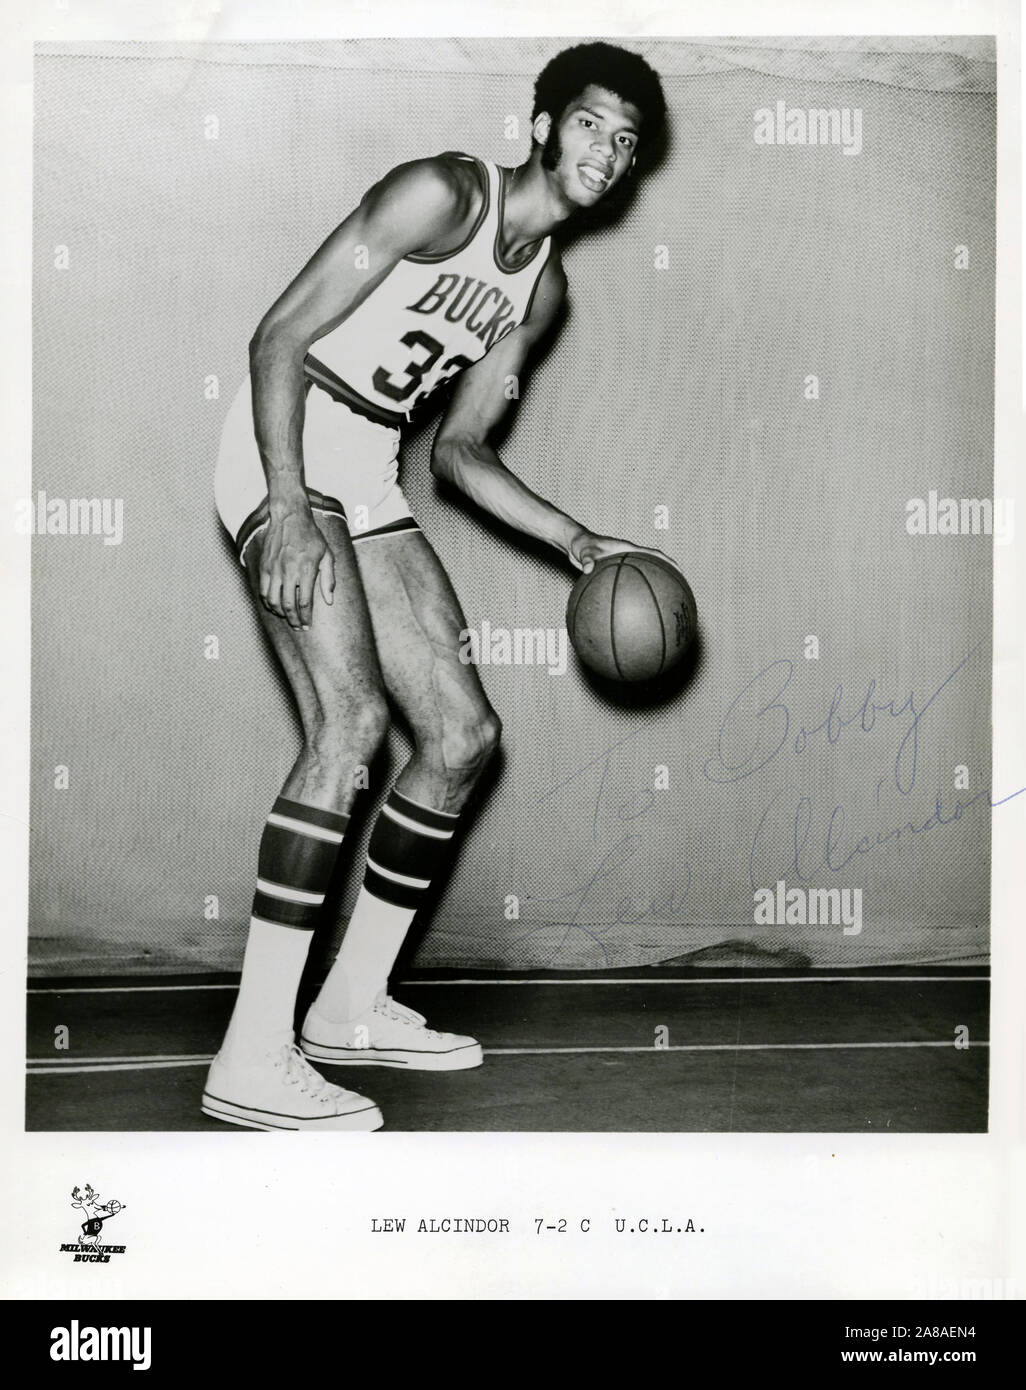 Frühe Publicity von Basketballstar Kareem Abdul Jabbar, der damals noch Lew Alcindor mit den Milwaukee Bucks hieß. Jabbar spielte seinen College-Ball bei der UCLA und war später ein Star bei den L.A. Lakers of the NBA. Stockfoto